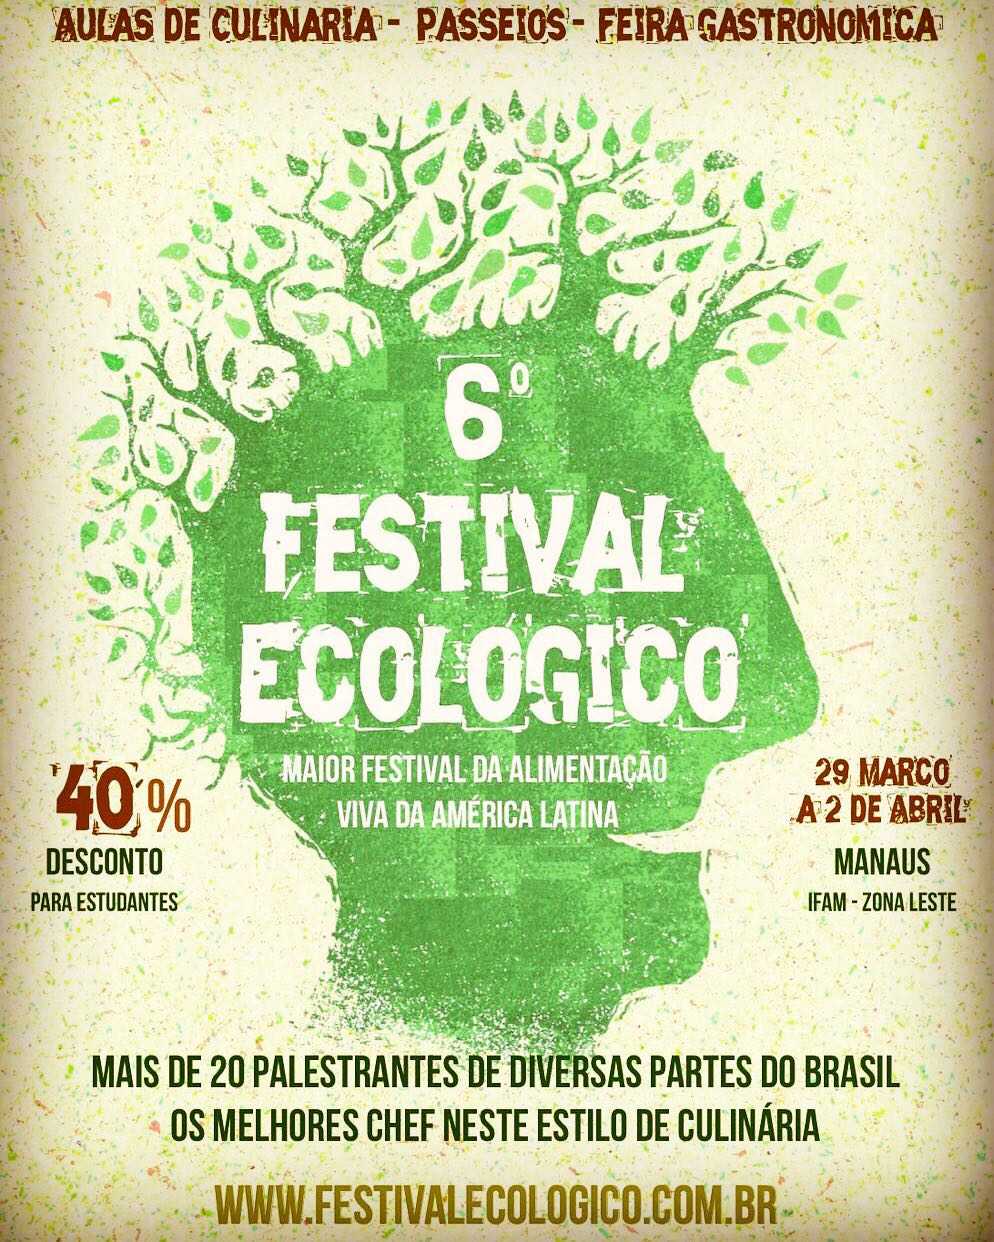 6º Festival Ecológico - Maior Festival da Alimentação Viva da América Latina